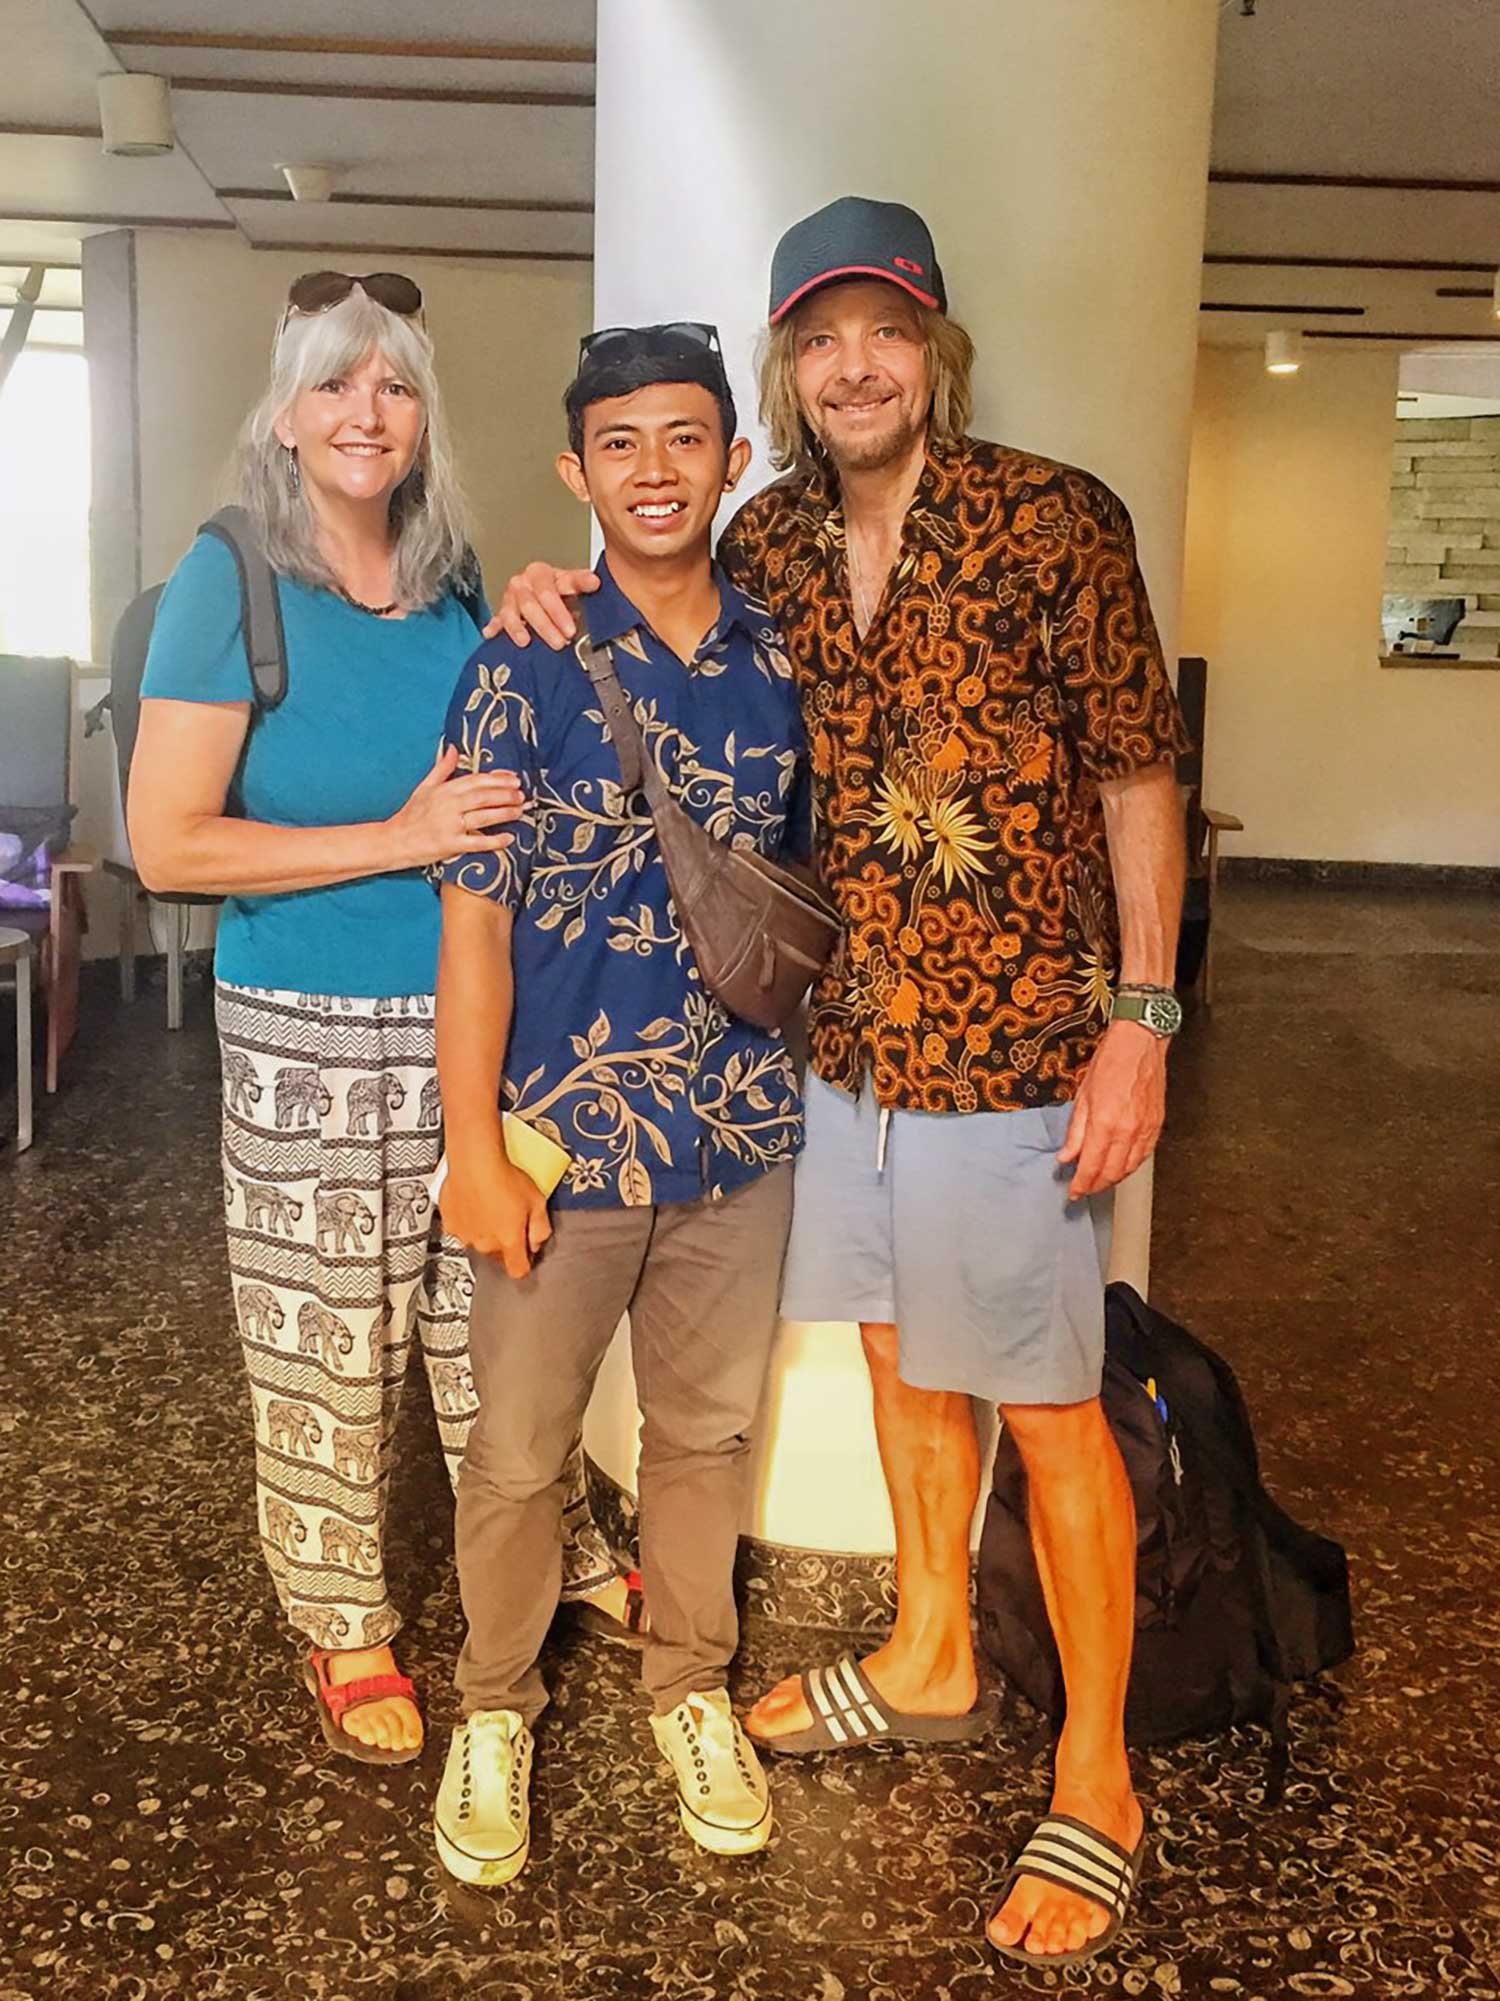 Joel Mielle and driver Tapa in Bali